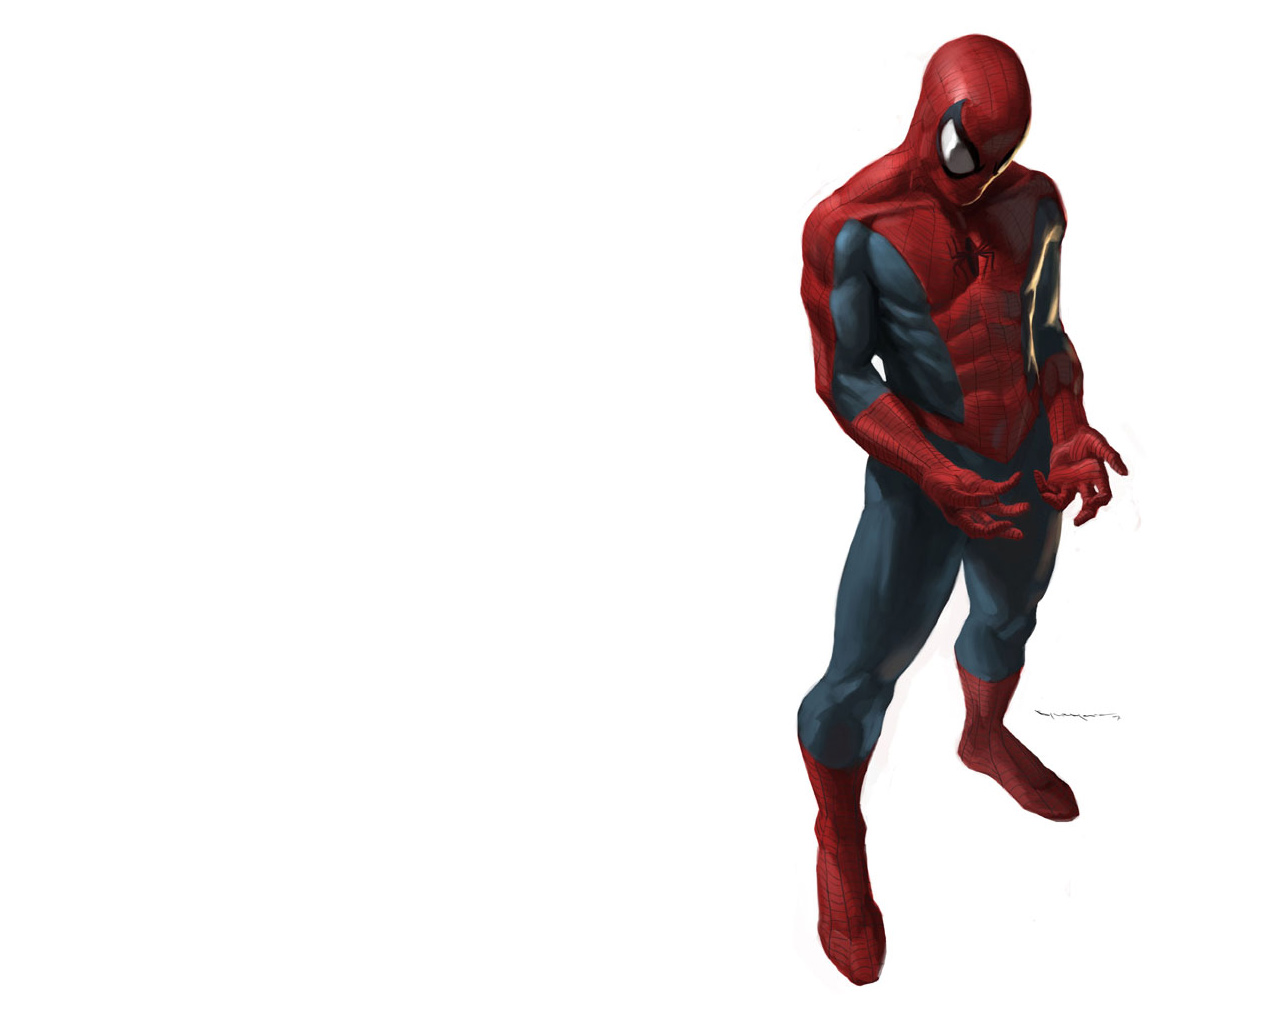 Marvel Ics Spider Man Wallpaper Hq